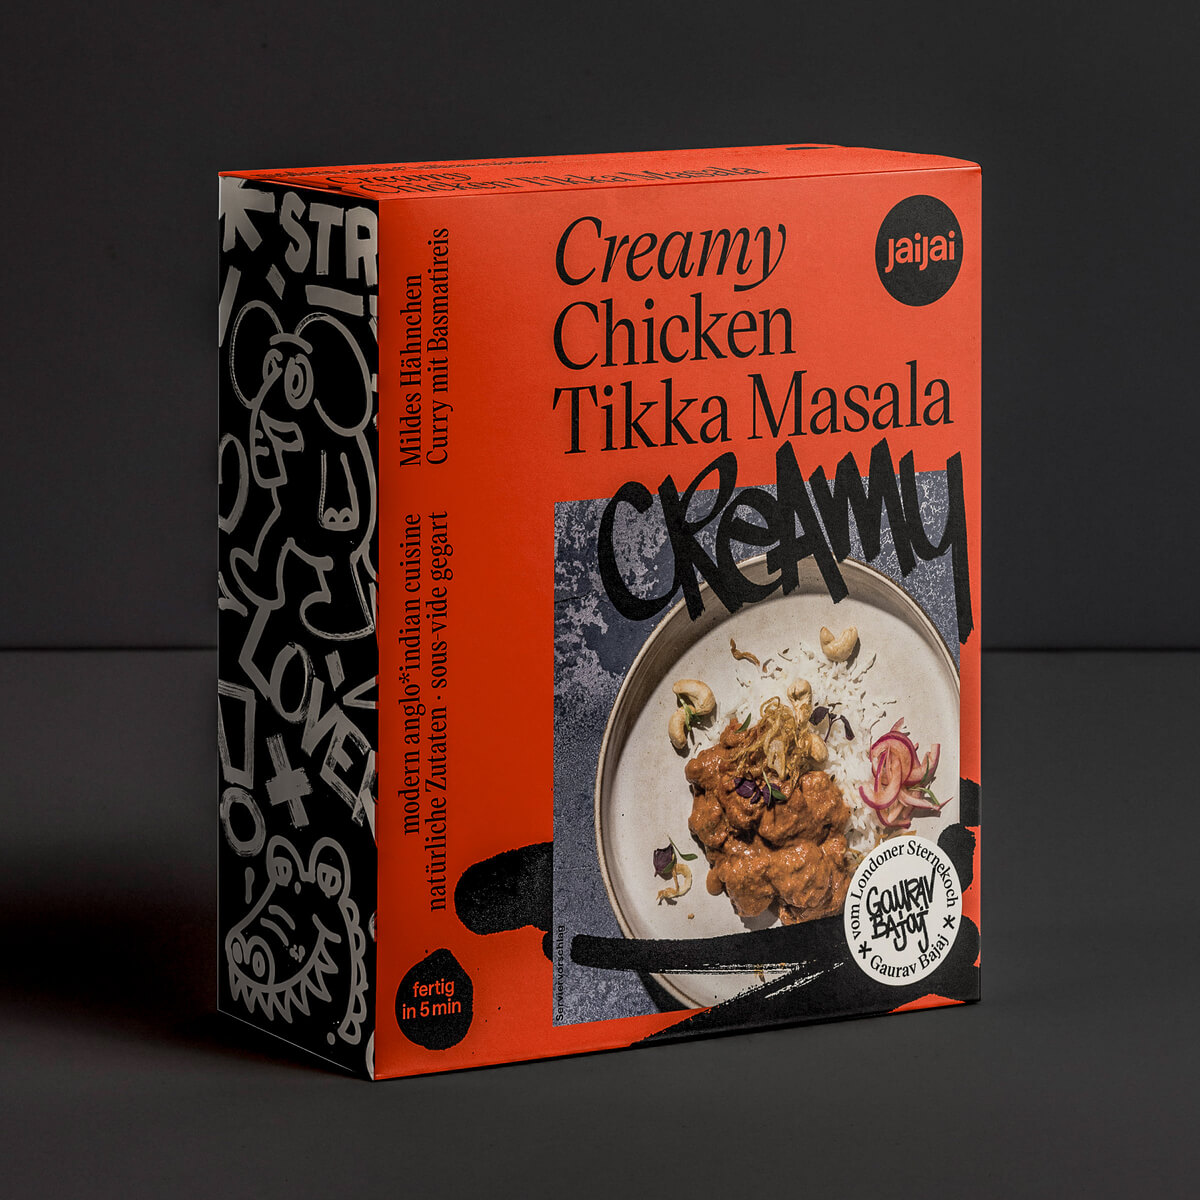 Verpackung des High-end Convenience Creamy Chicken Tikka Masala von Jai Food